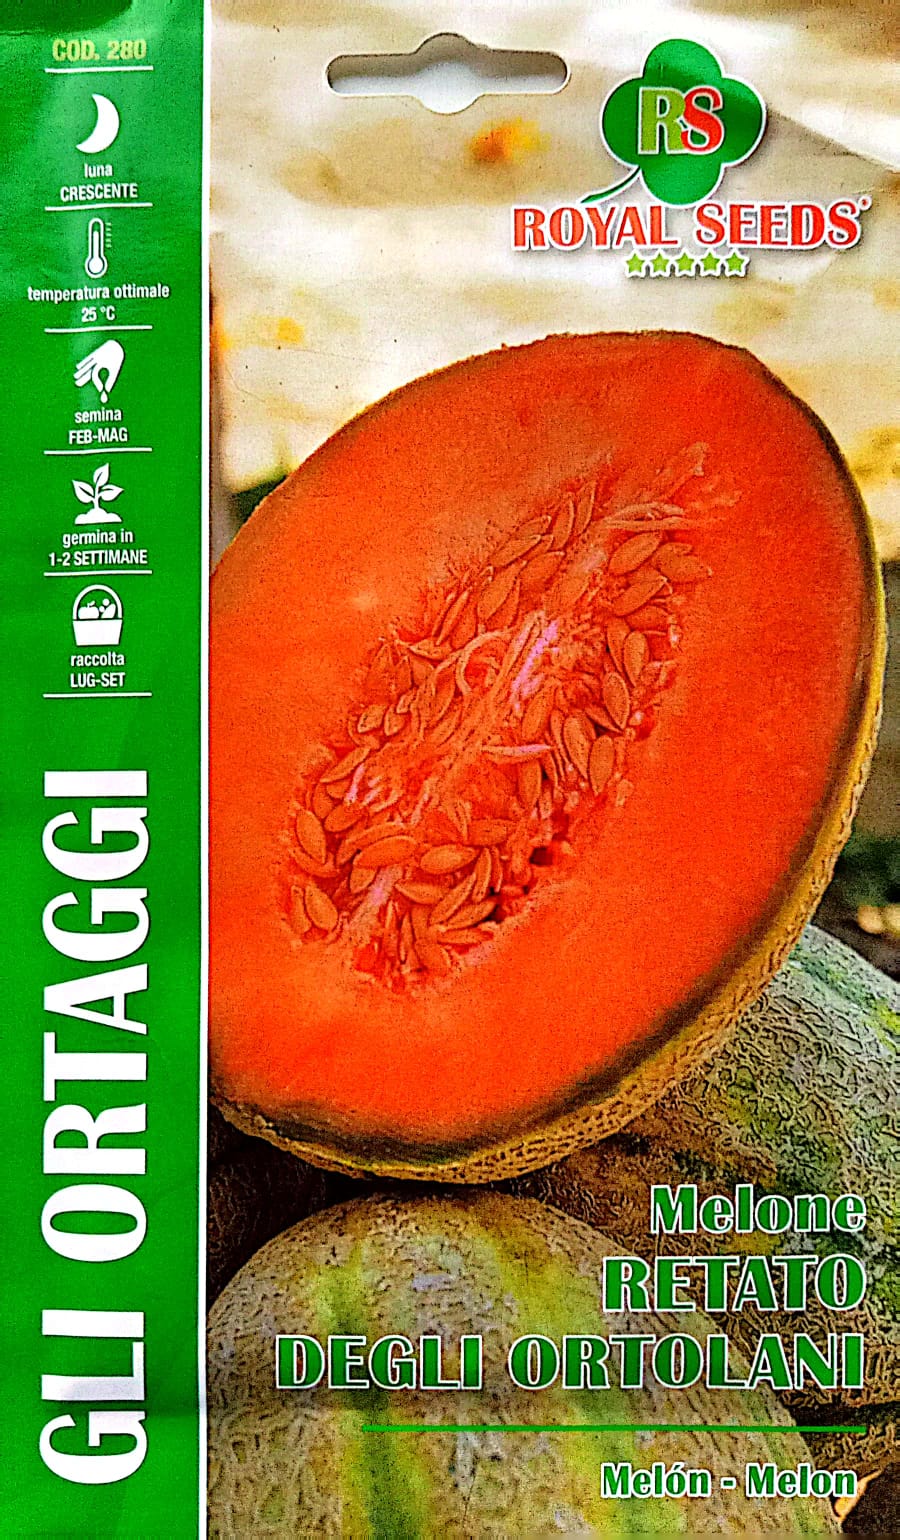 Royal Melon Retato Degli Ortolani 280